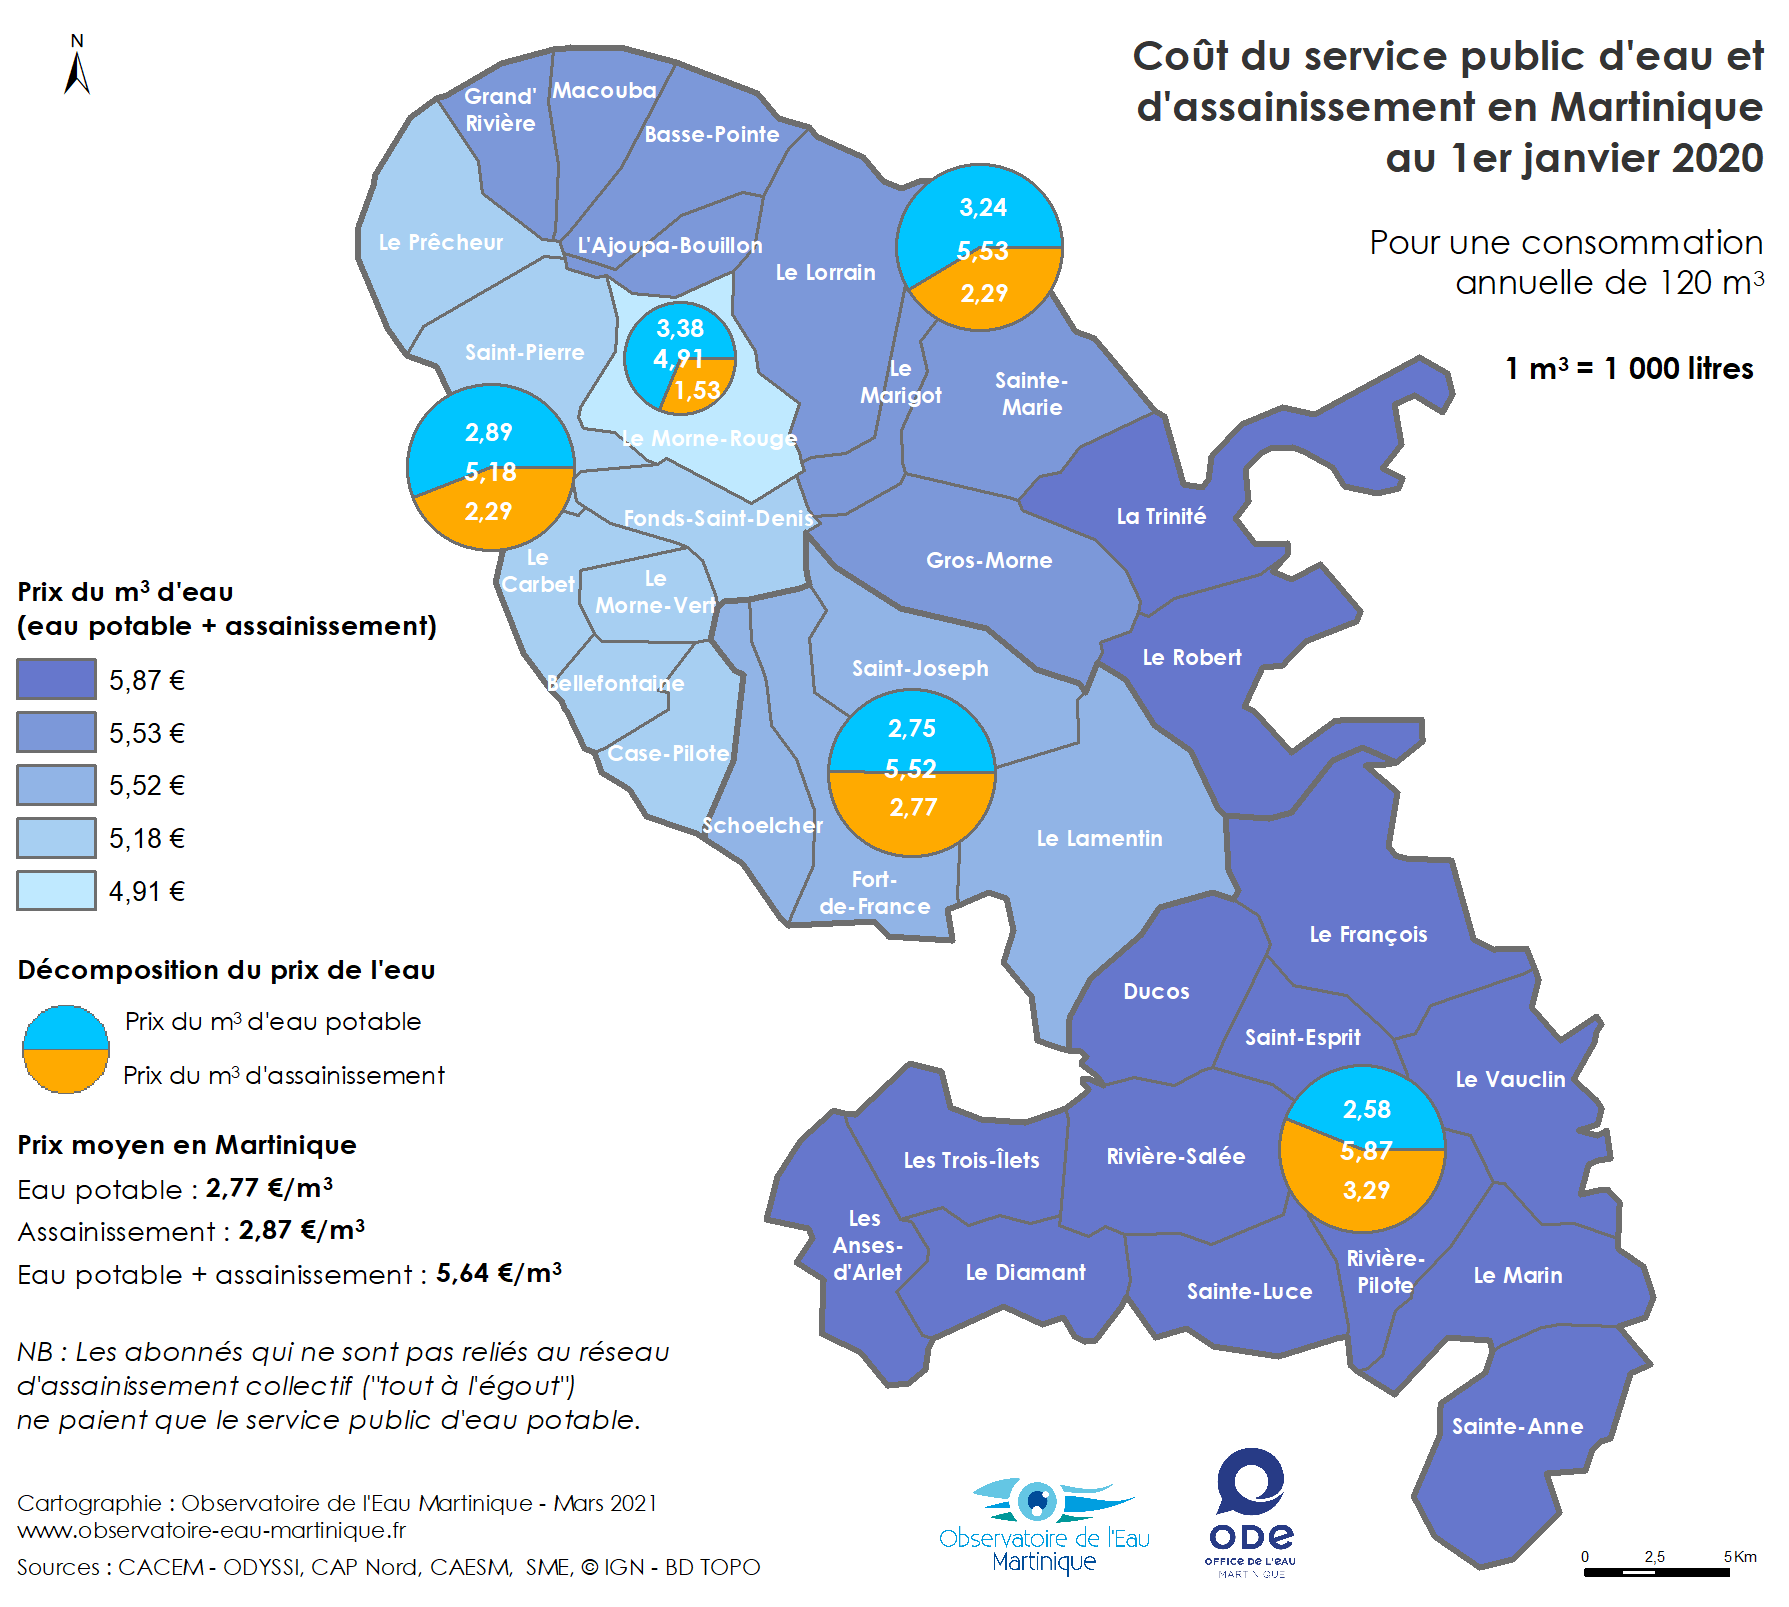 Coût des services publics d'eau et d'assainissement en Martinique au 1er janvier 2020